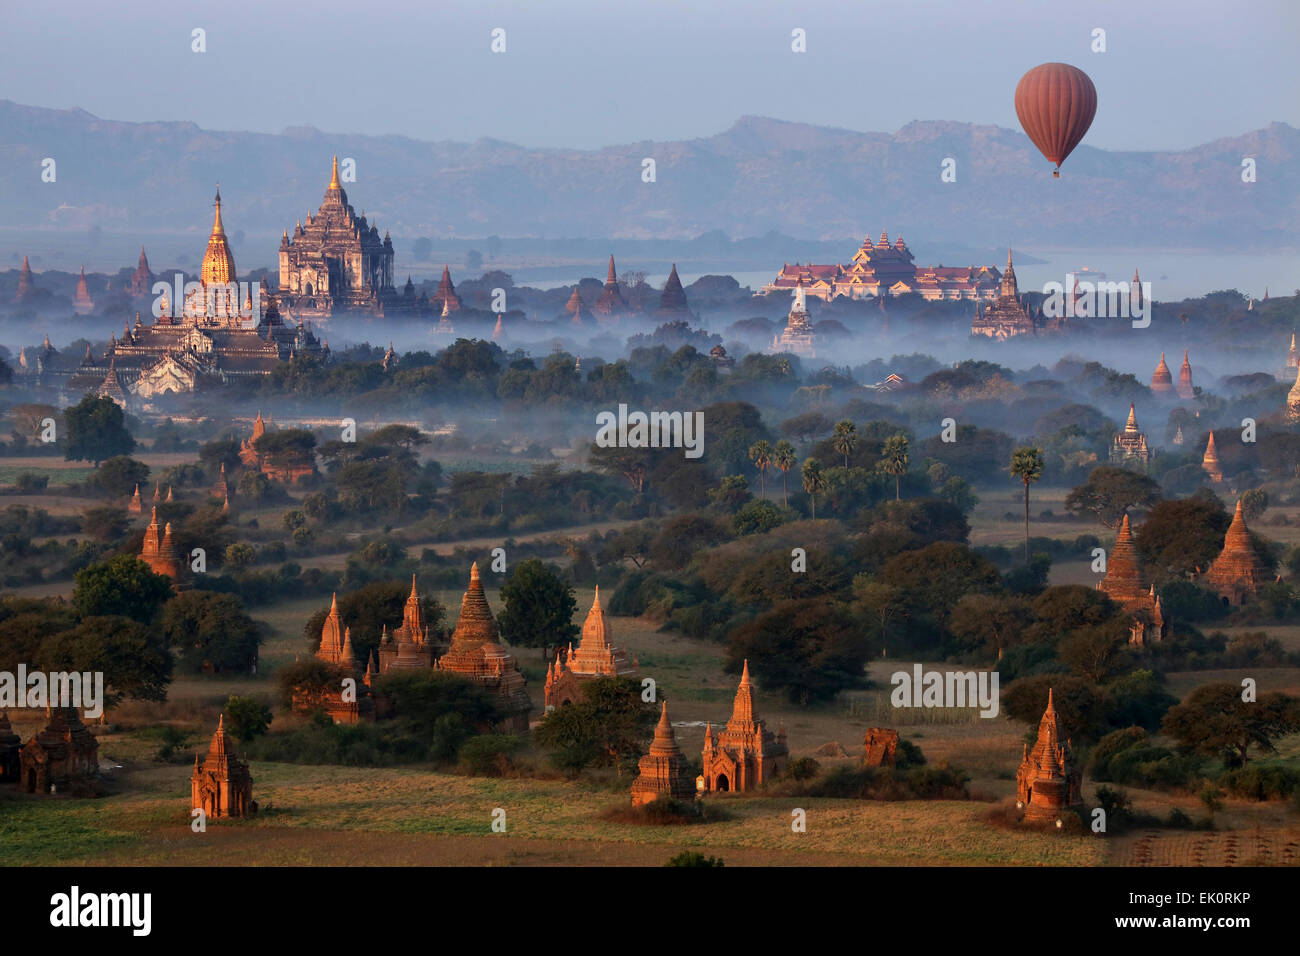 La mattina presto vista aerea dei templi della zona archeologica nei pressi del fiume Irrawaddy in Bagan in Myanmar (Birmania). Foto Stock